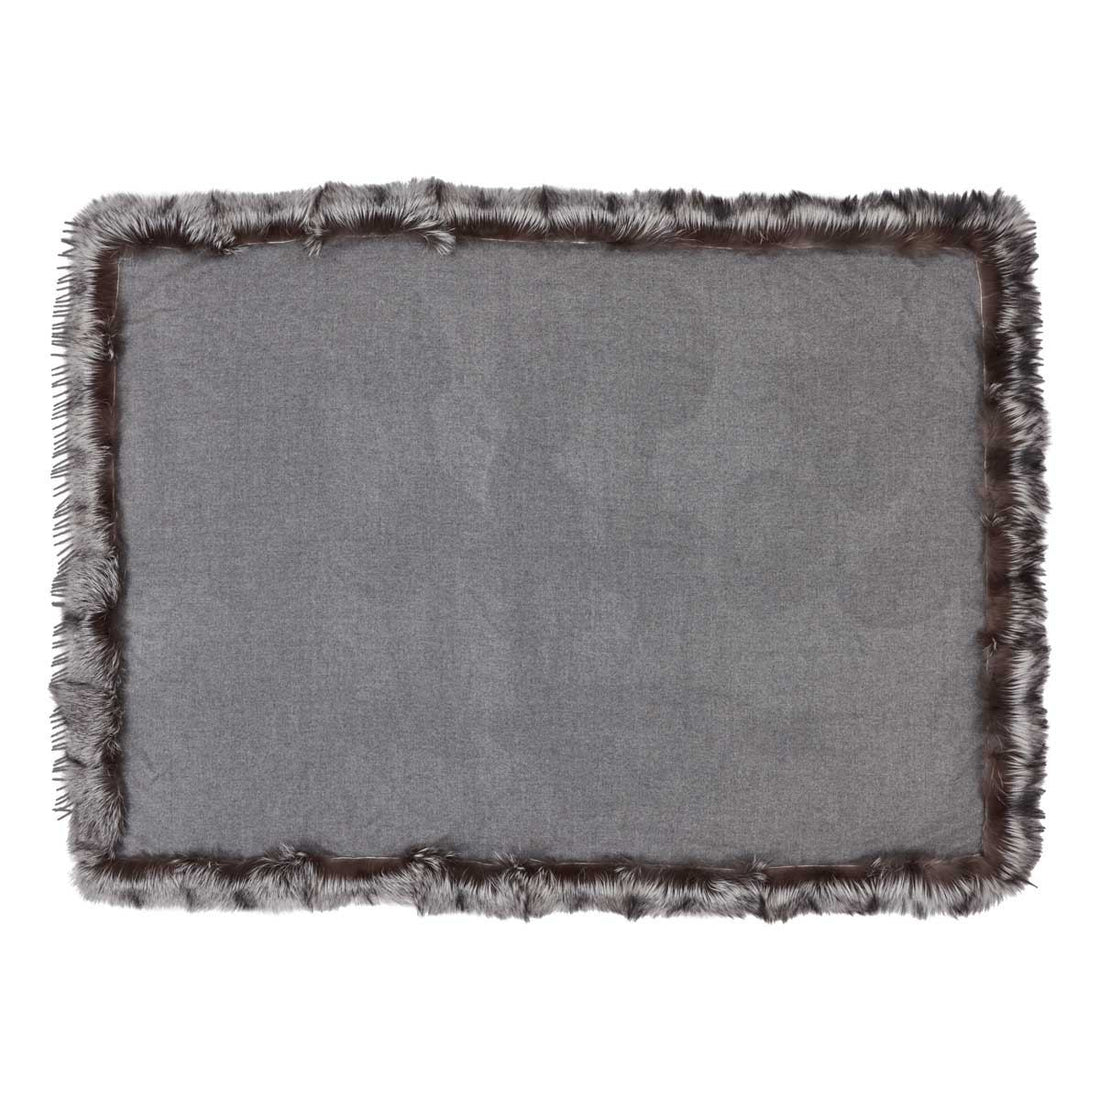 Cobertor | Caxemira, raposa | 130x200 cm.